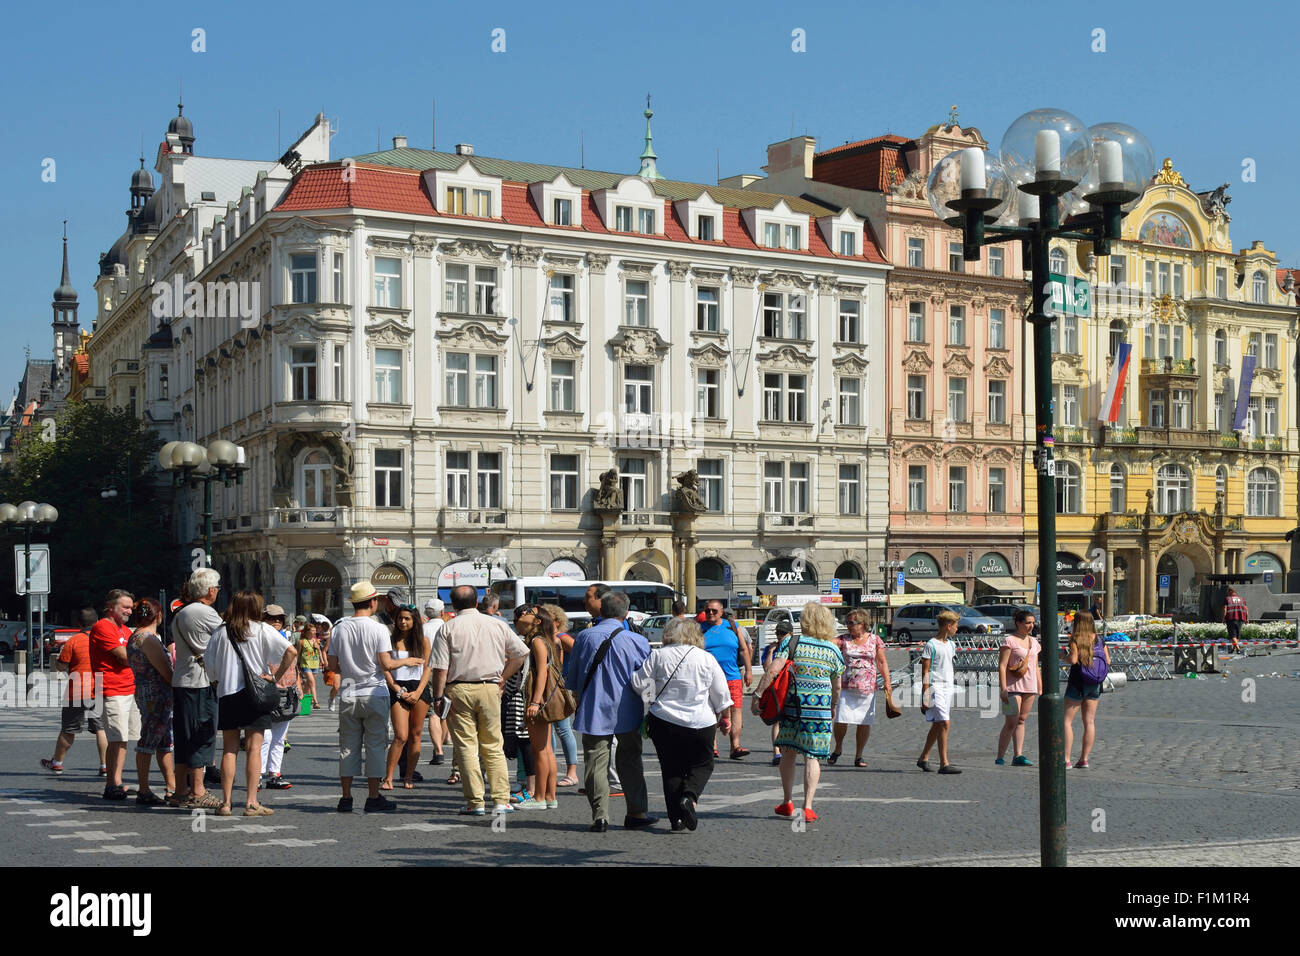 Groupe de touristes sur la place de la vieille ville de Prague en République tchèque. Banque D'Images